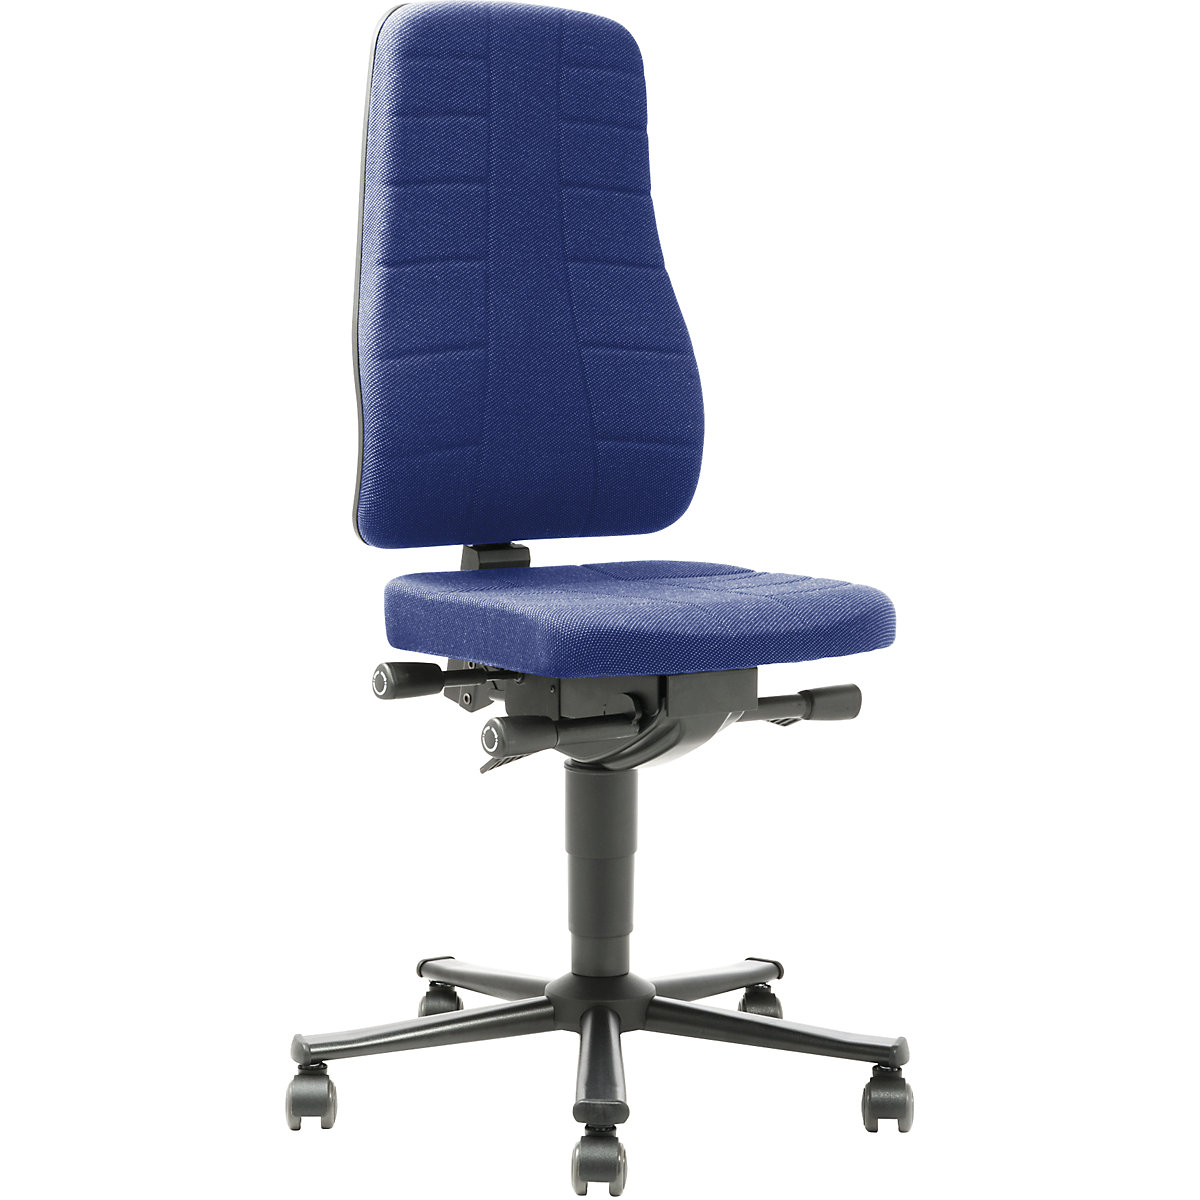 Pracovní otočná židle All-in-One – bimos, s kolečky, látkové čalounění, modré-6